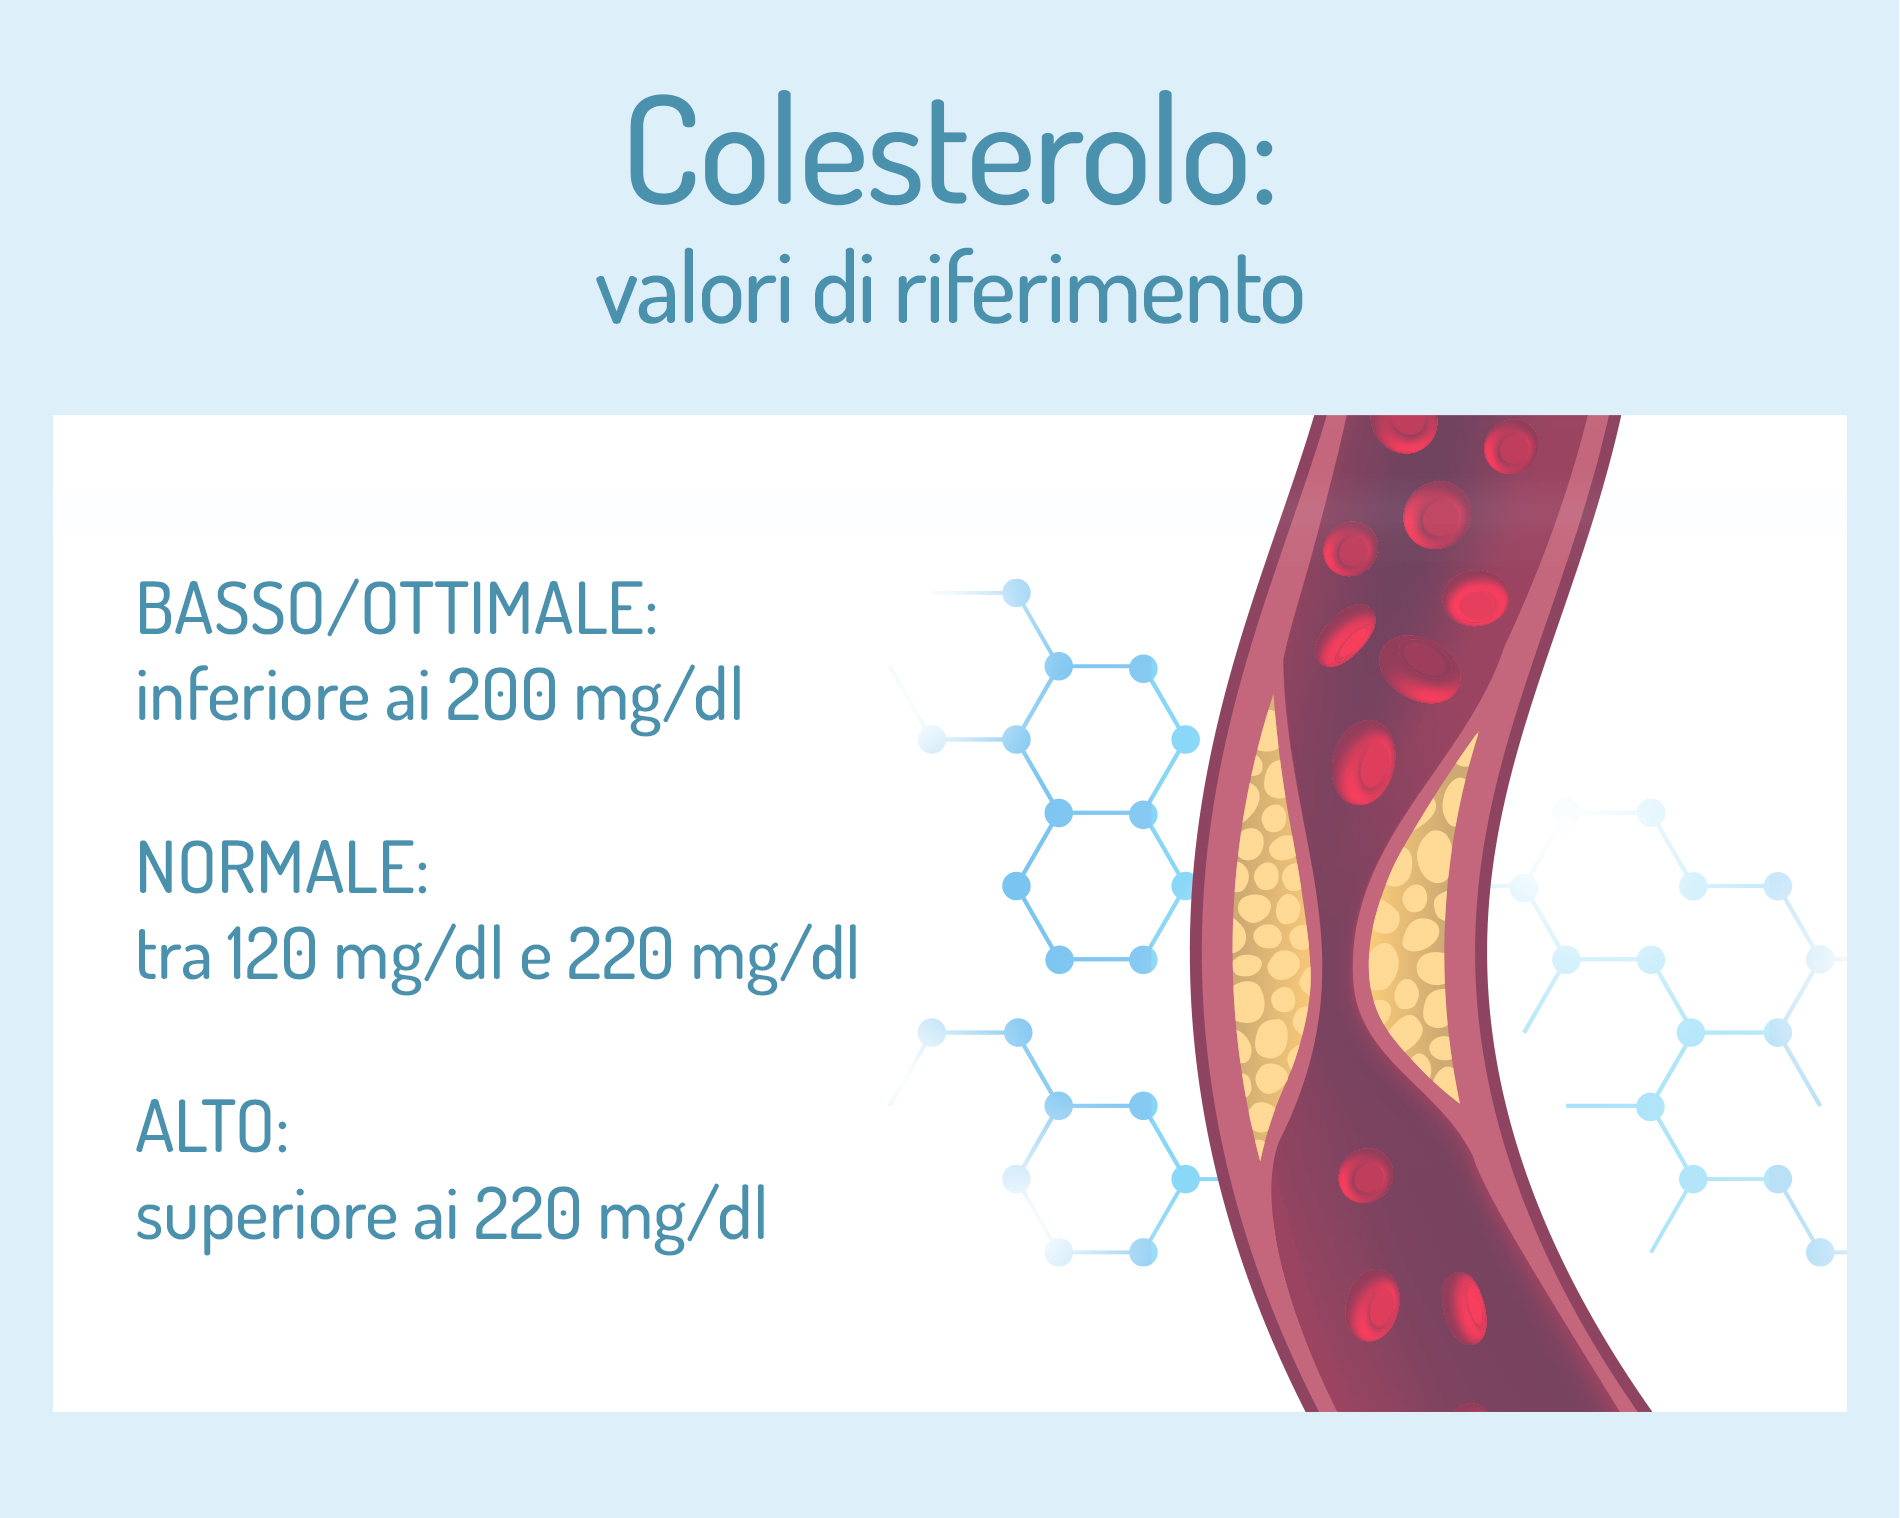 Colesterolo: valori di riferimento